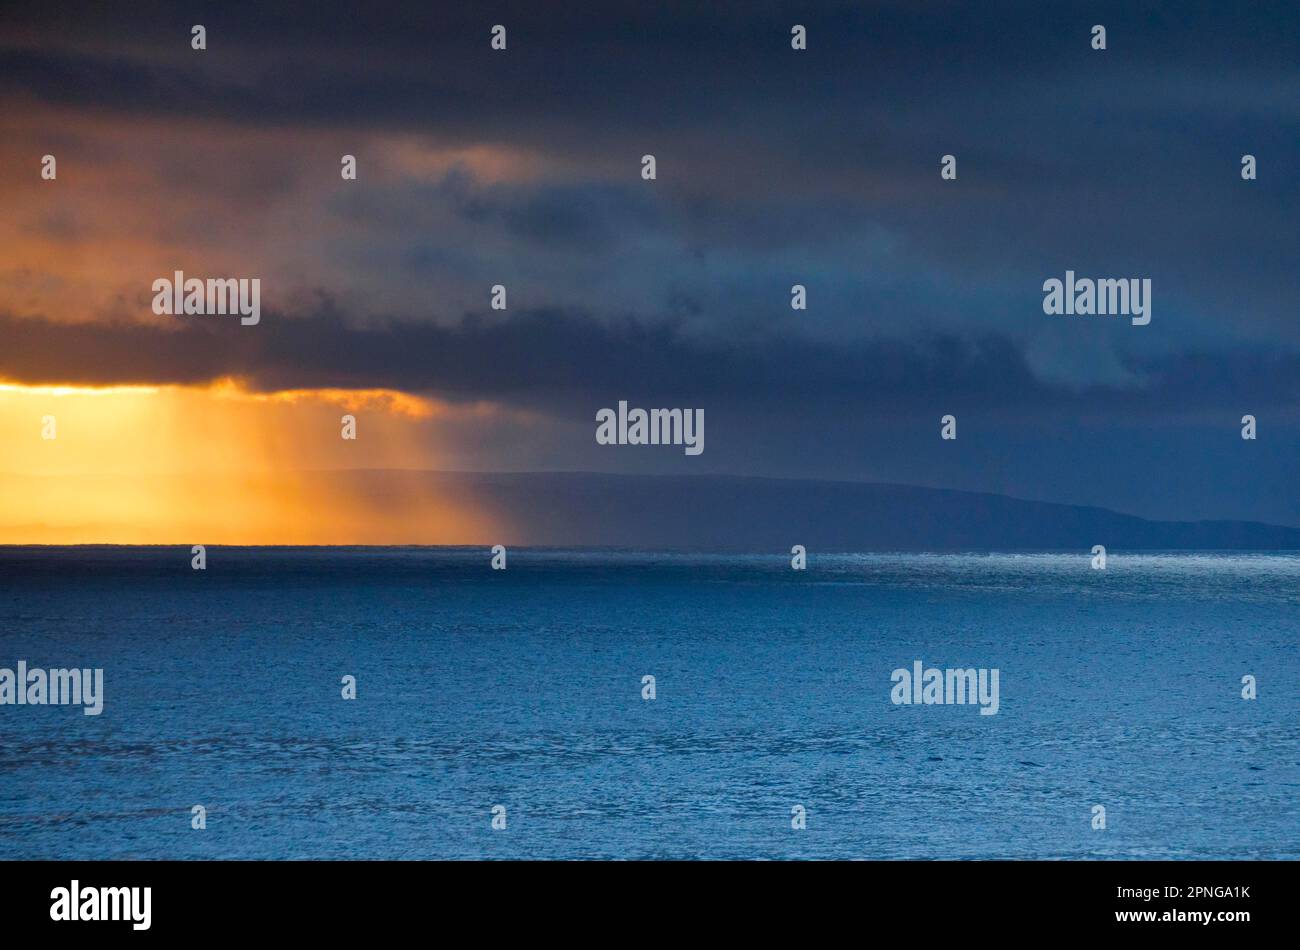 Die Abendsonne bricht durch tief liegende Regenwolken über den Sommerinseln und dem offenen Wasser des blauen Atlantiks an der Westküste Schottlands Stockfoto